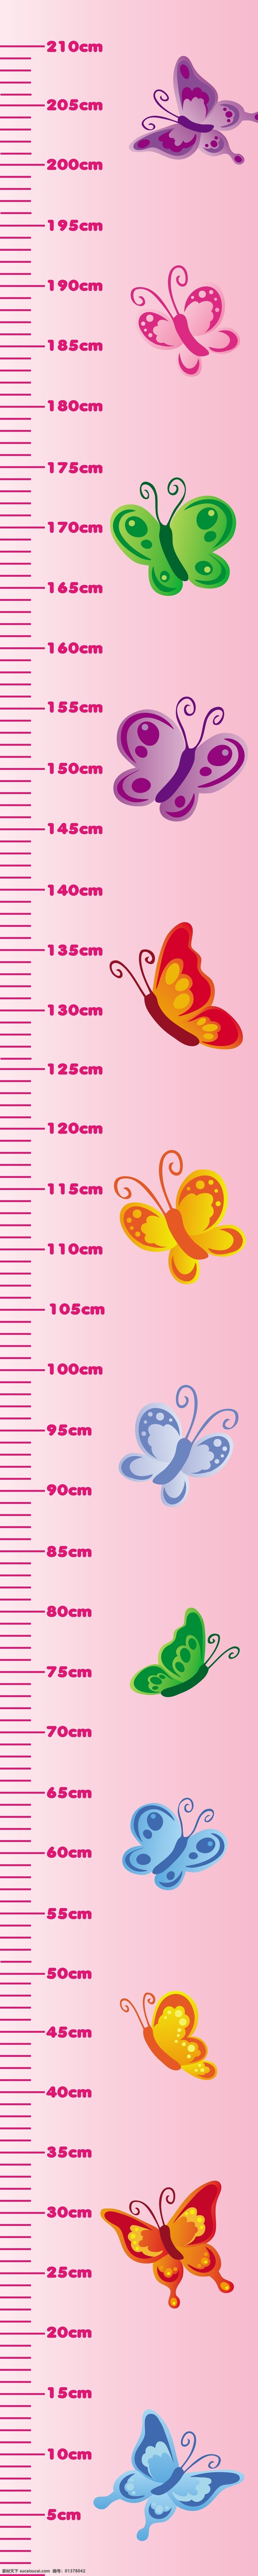 蝴蝶 测量 身高 身体 尺 矢量图 其他矢量图